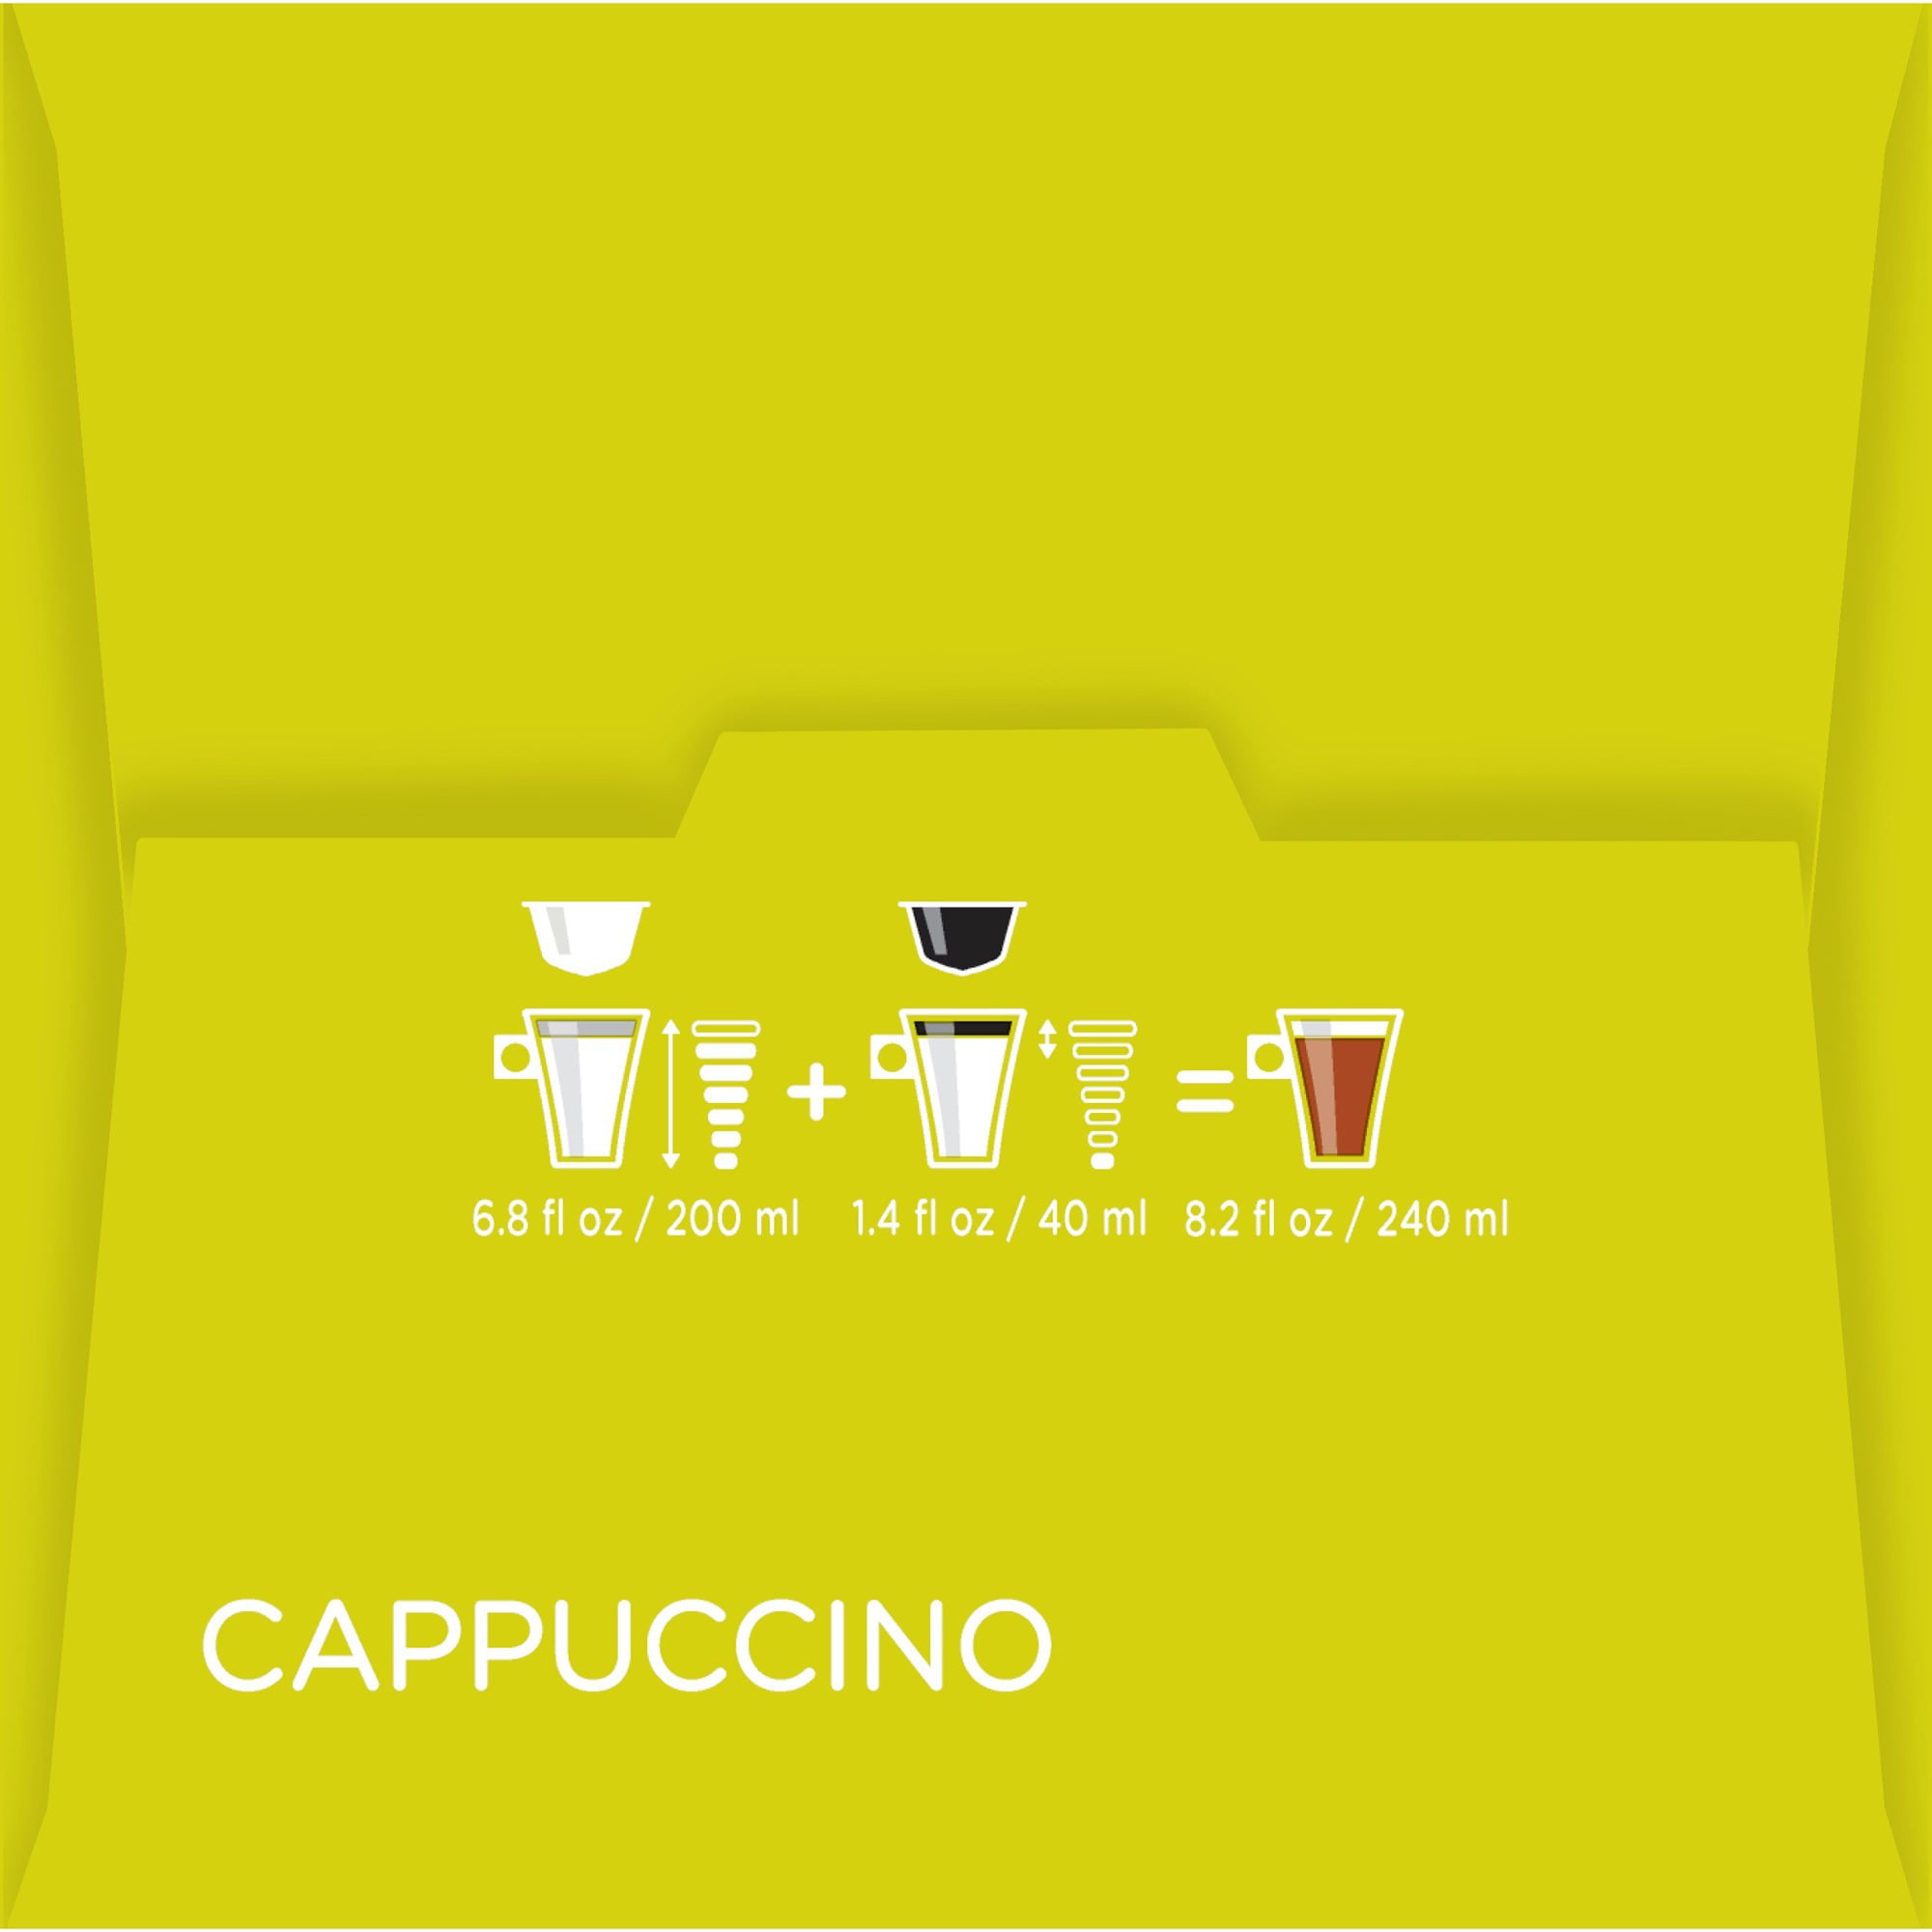 Nescafé Dolce Gusto Cappuccino, boîte de 16 capsules - Café en